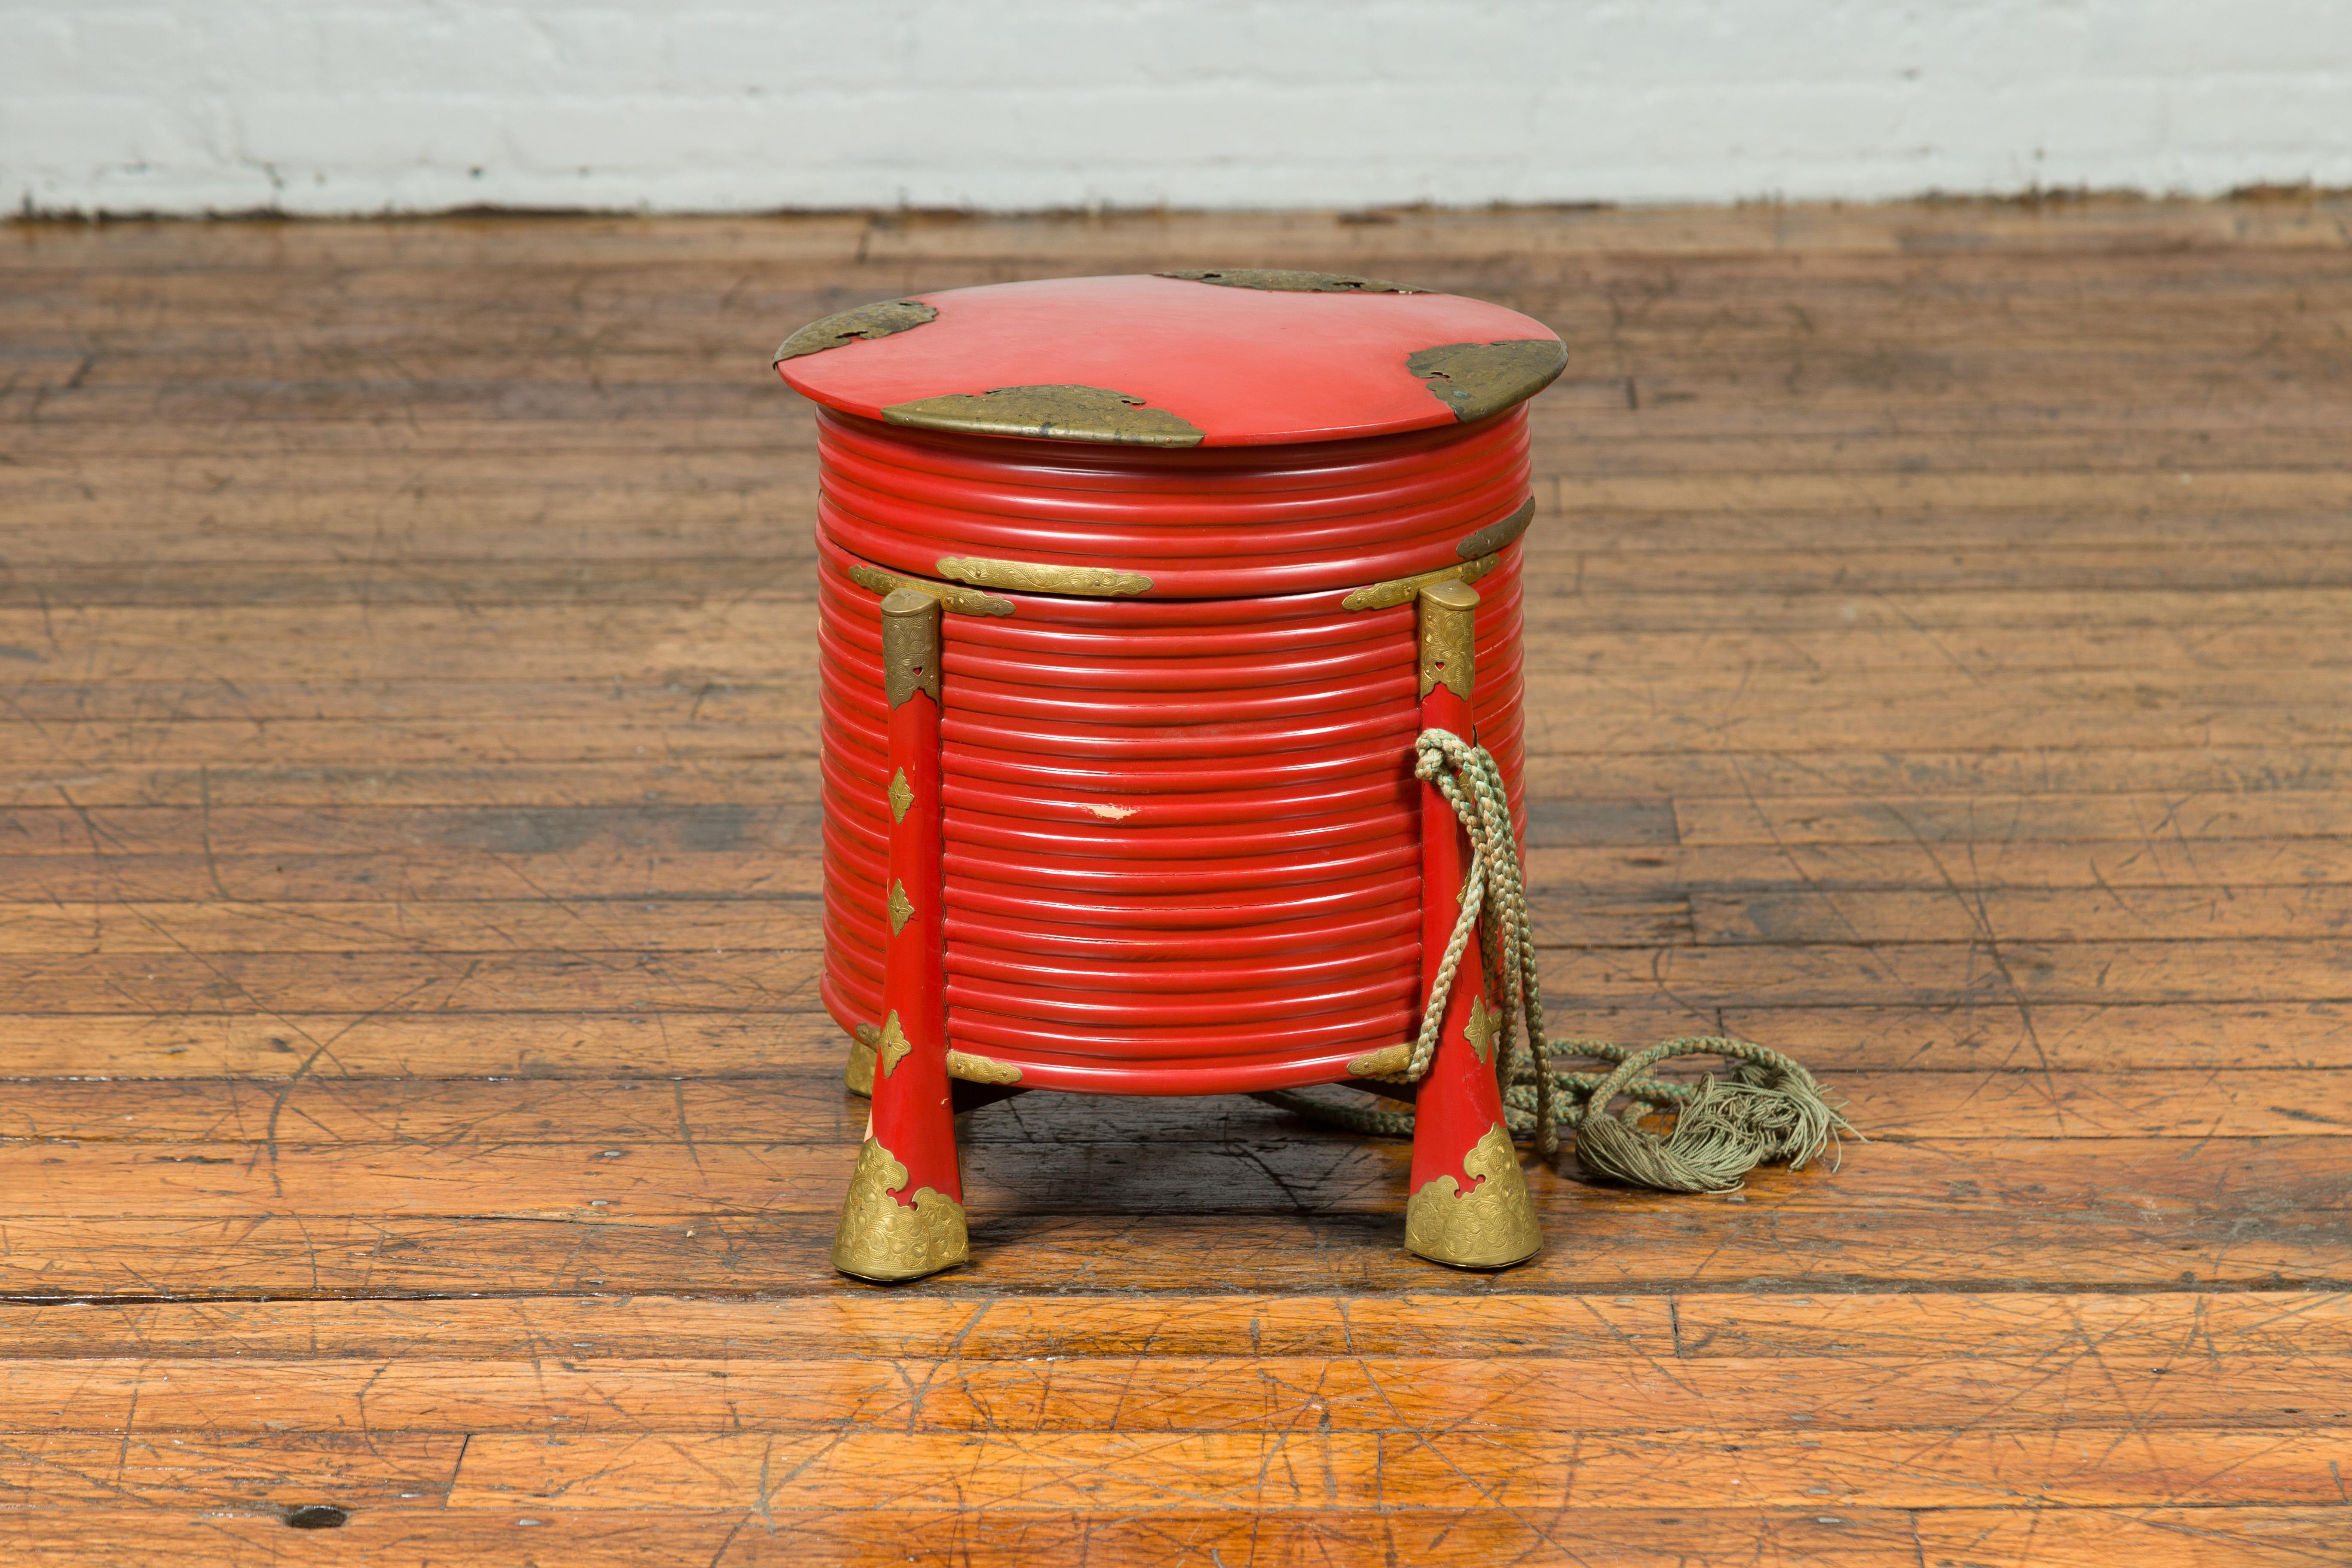 Eine japanische Hokai-Box aus der Taisho-Periode aus dem frühen 20. Jahrhundert mit rotem Lack, verzierten Messingakzenten und originalem Seil. Diese lebhafte japanische Hokai-Box aus der Taisho-Periode, die zu Beginn des 20. Jahrhunderts